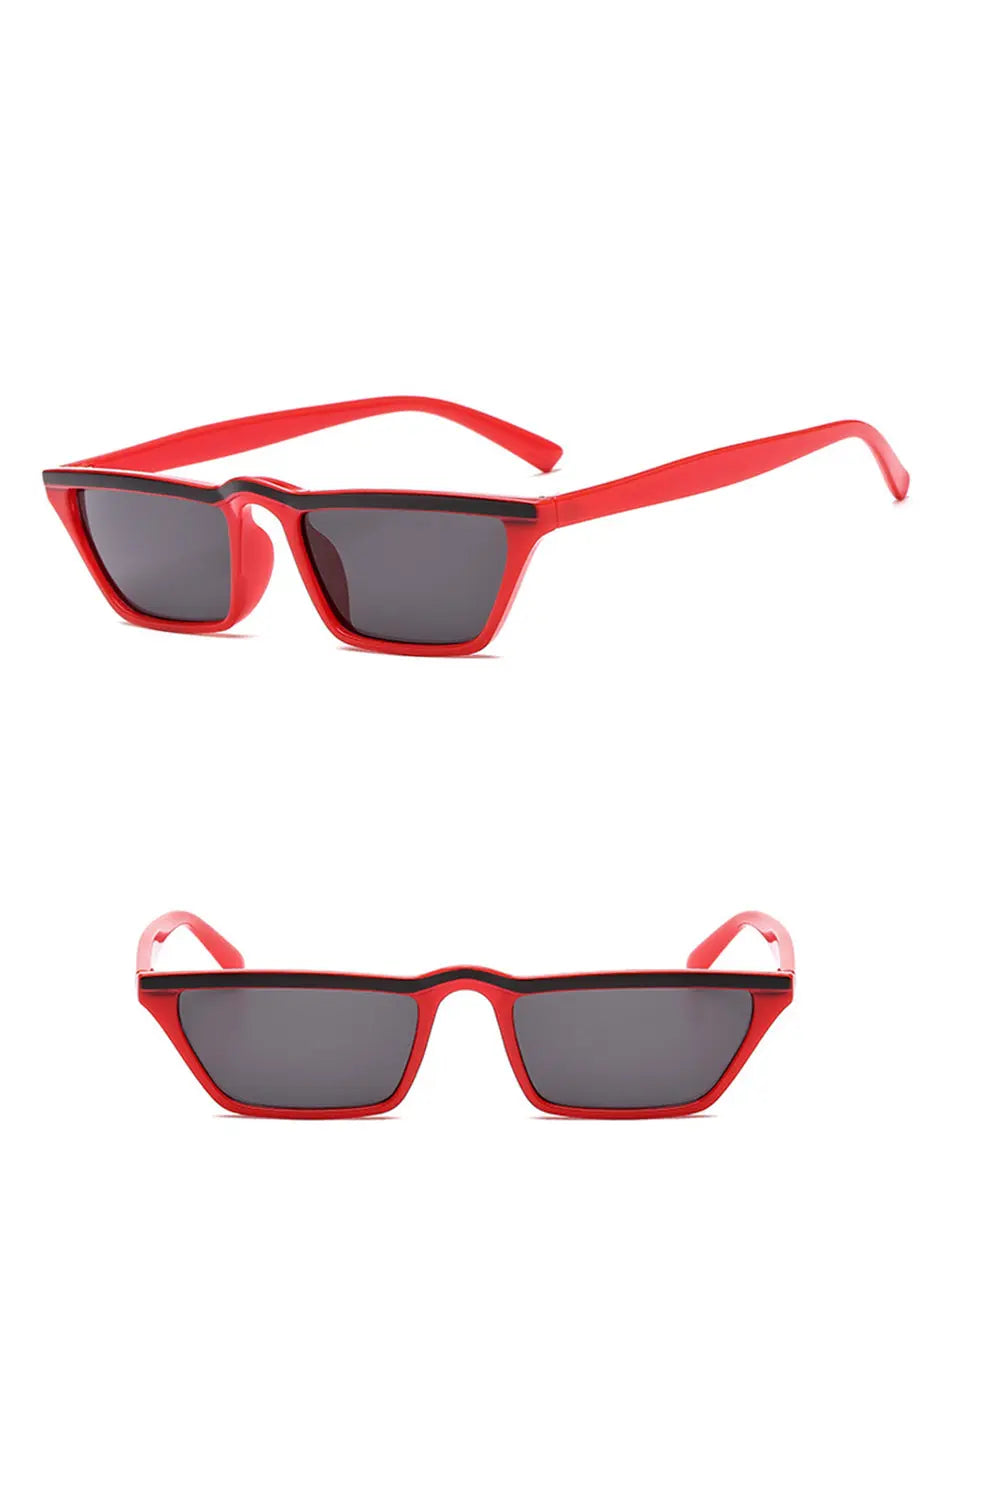 Outline Vintage Sunglasses - Red - Strange Clothes